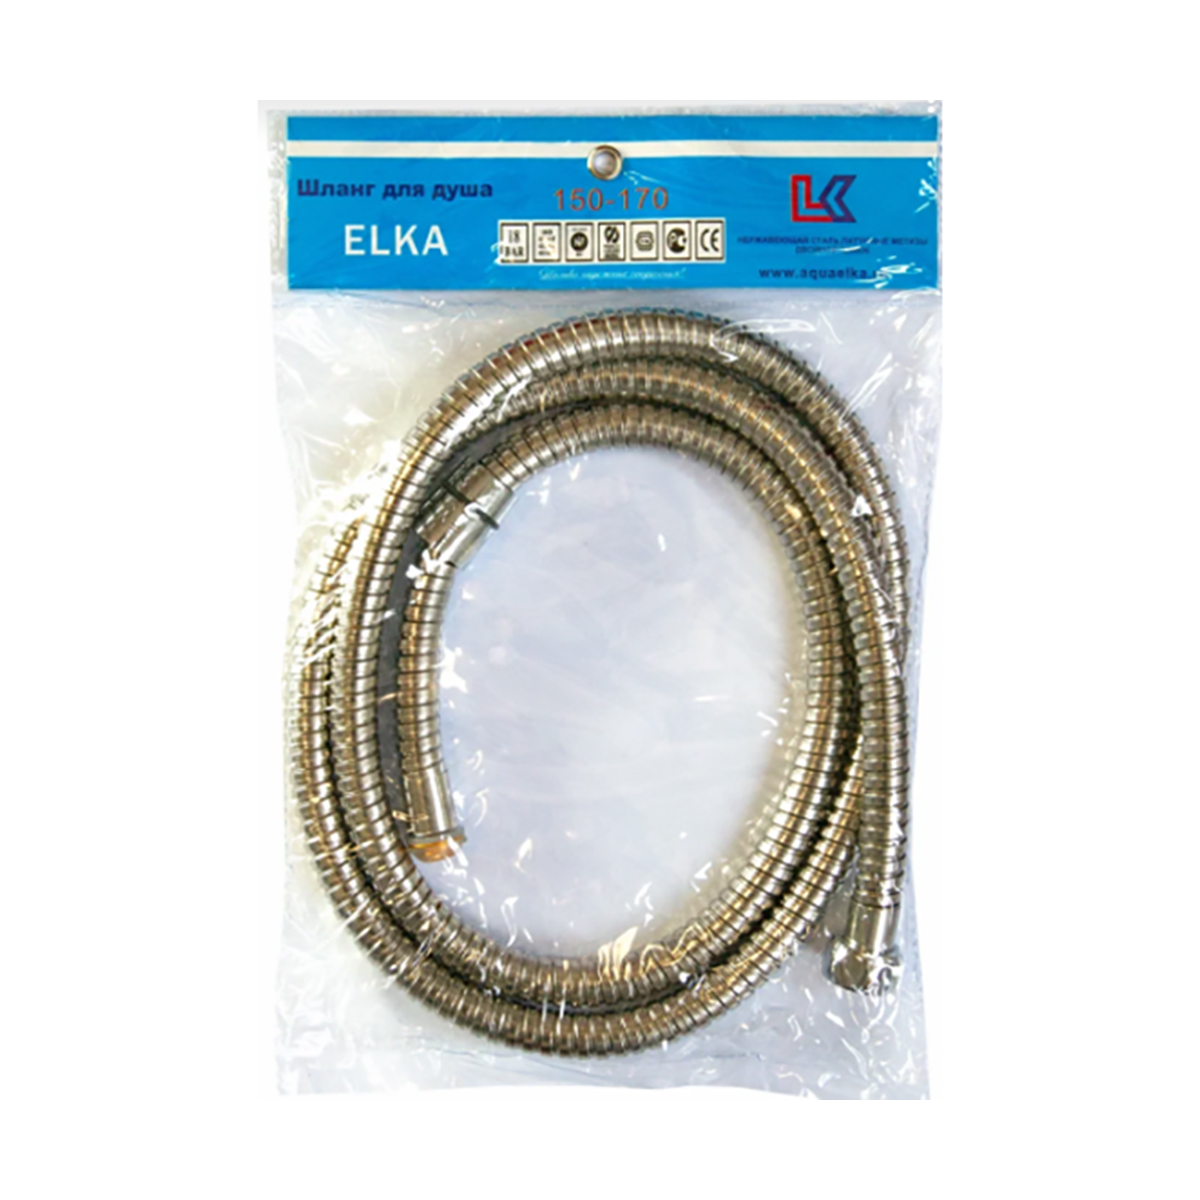 Шланг для душа Elka, растяжной, нержавеющая сталь, d 14 мм, 1,5 - 1,7 м, хром растяжной шланг для душа rm